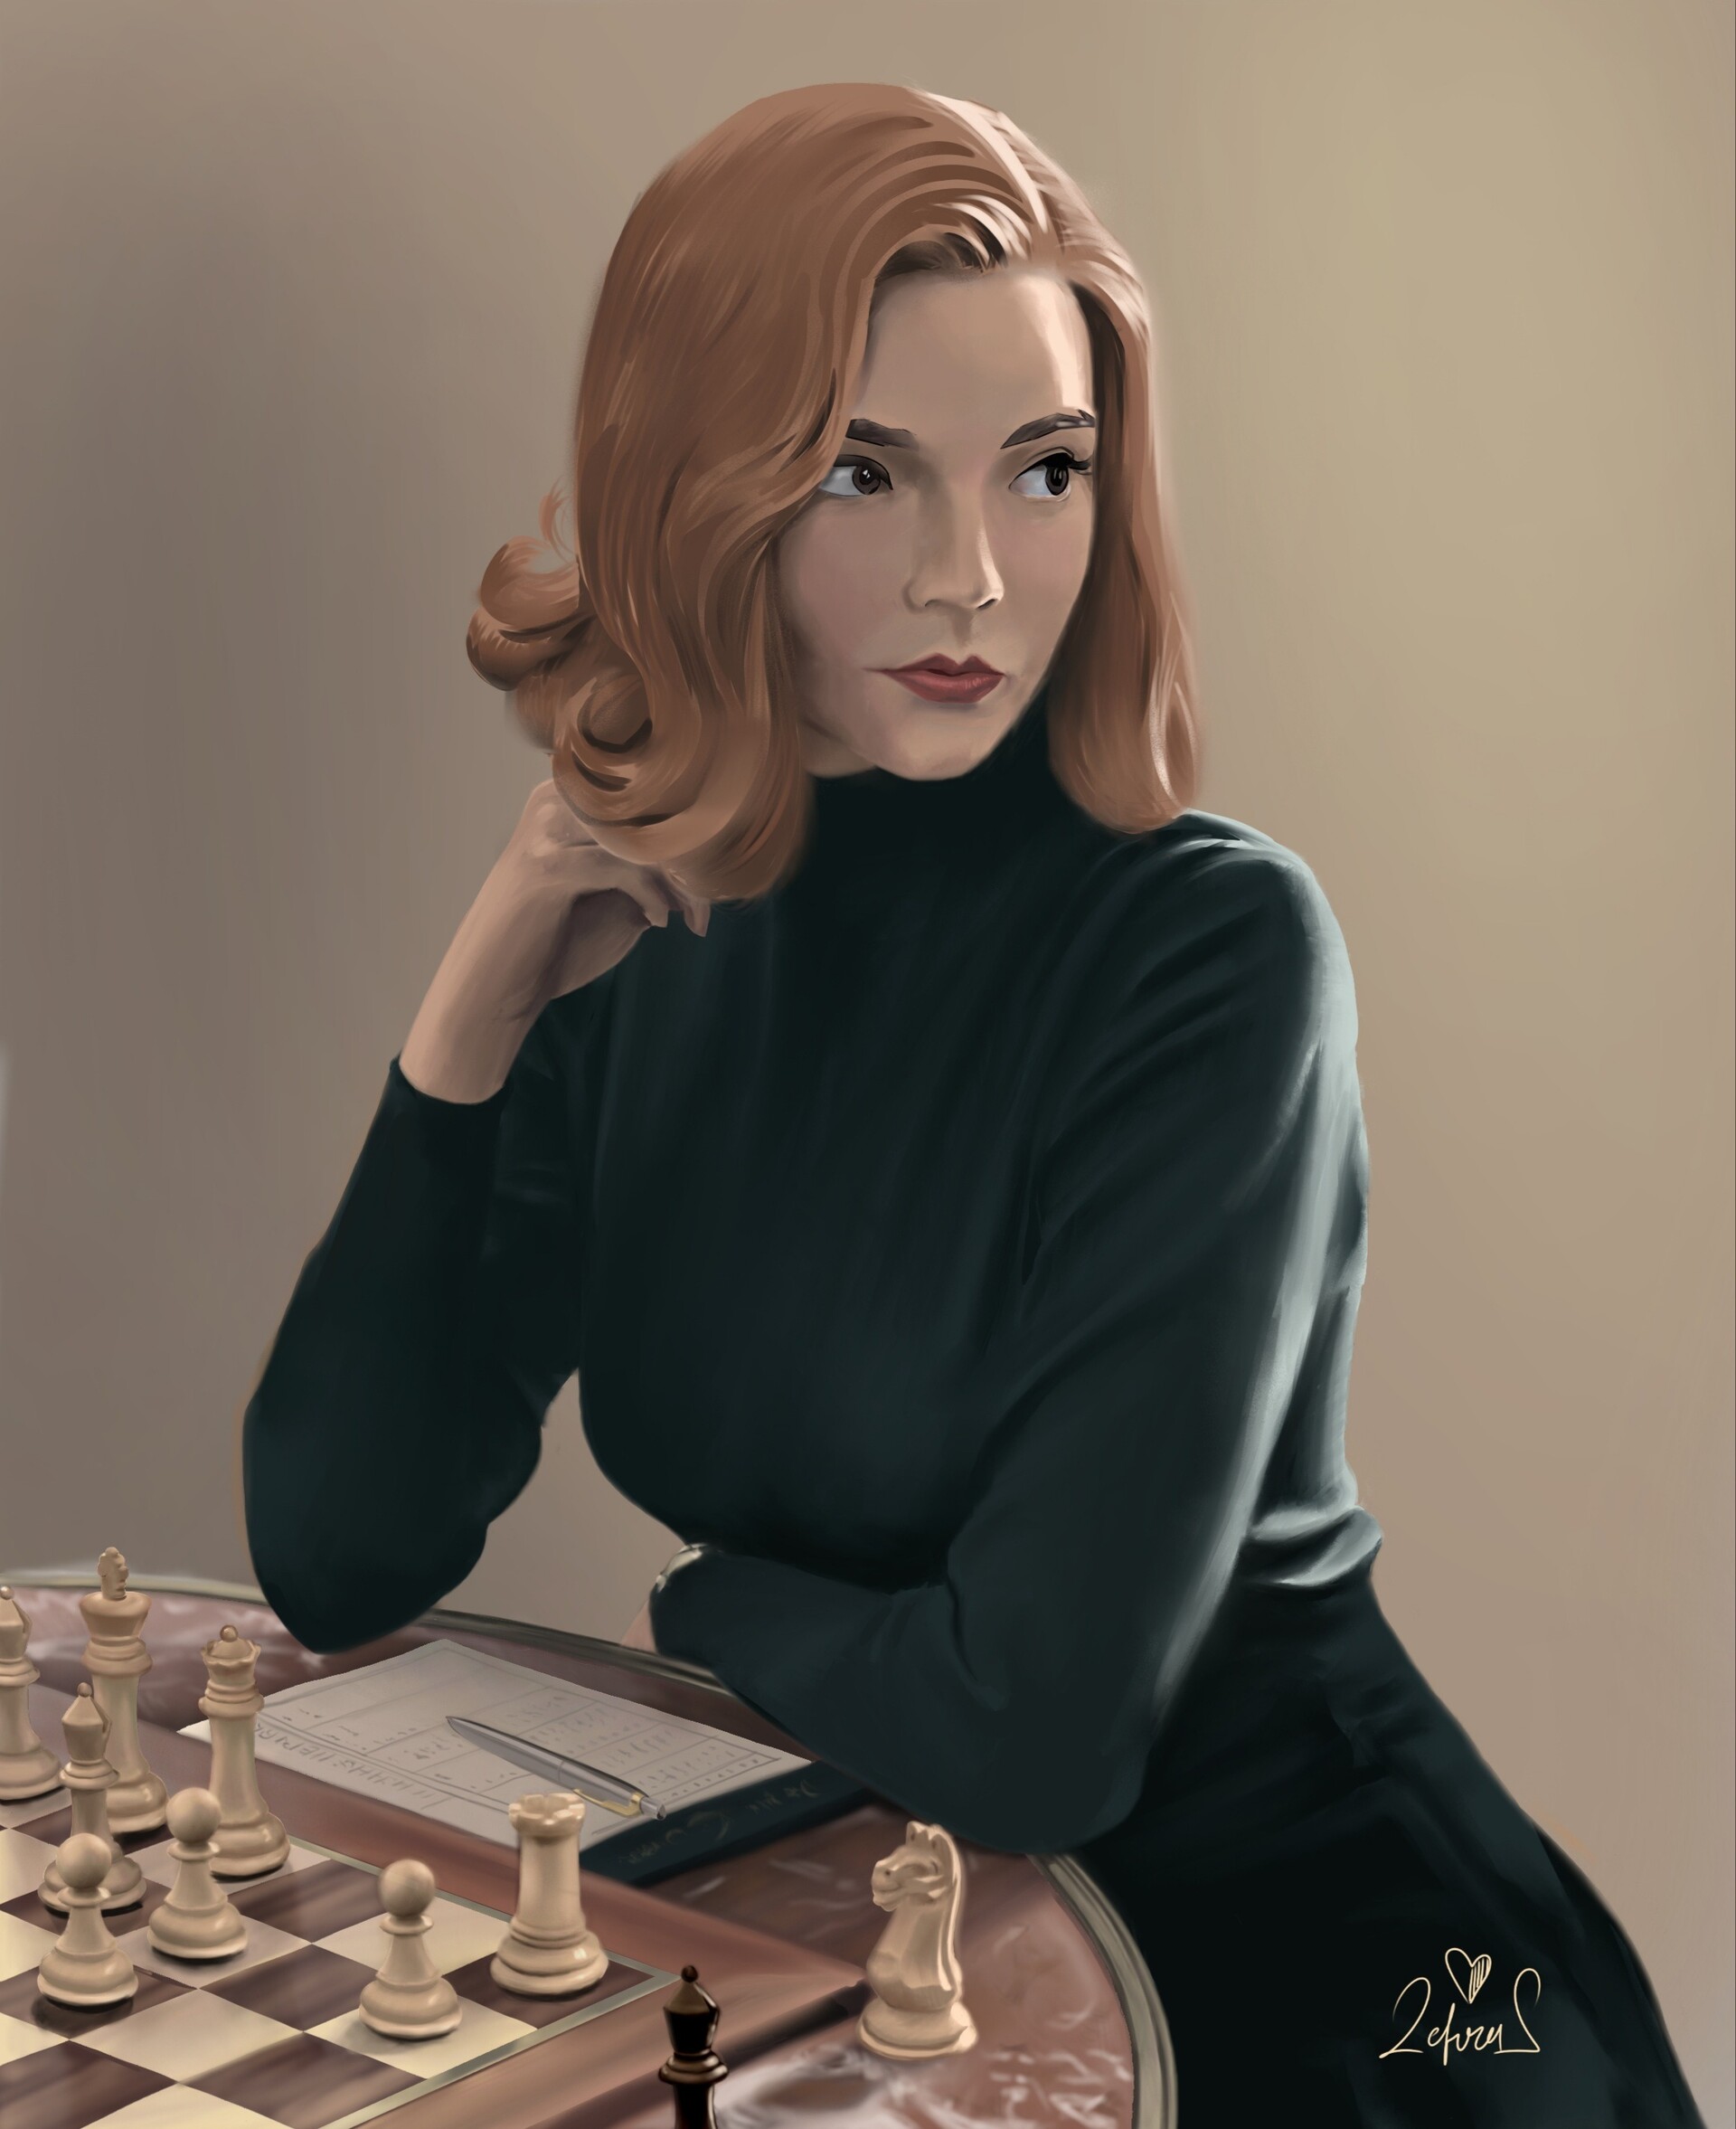 Elizabeth Harmon, The Queen's Gambit by Ralanart on DeviantArt